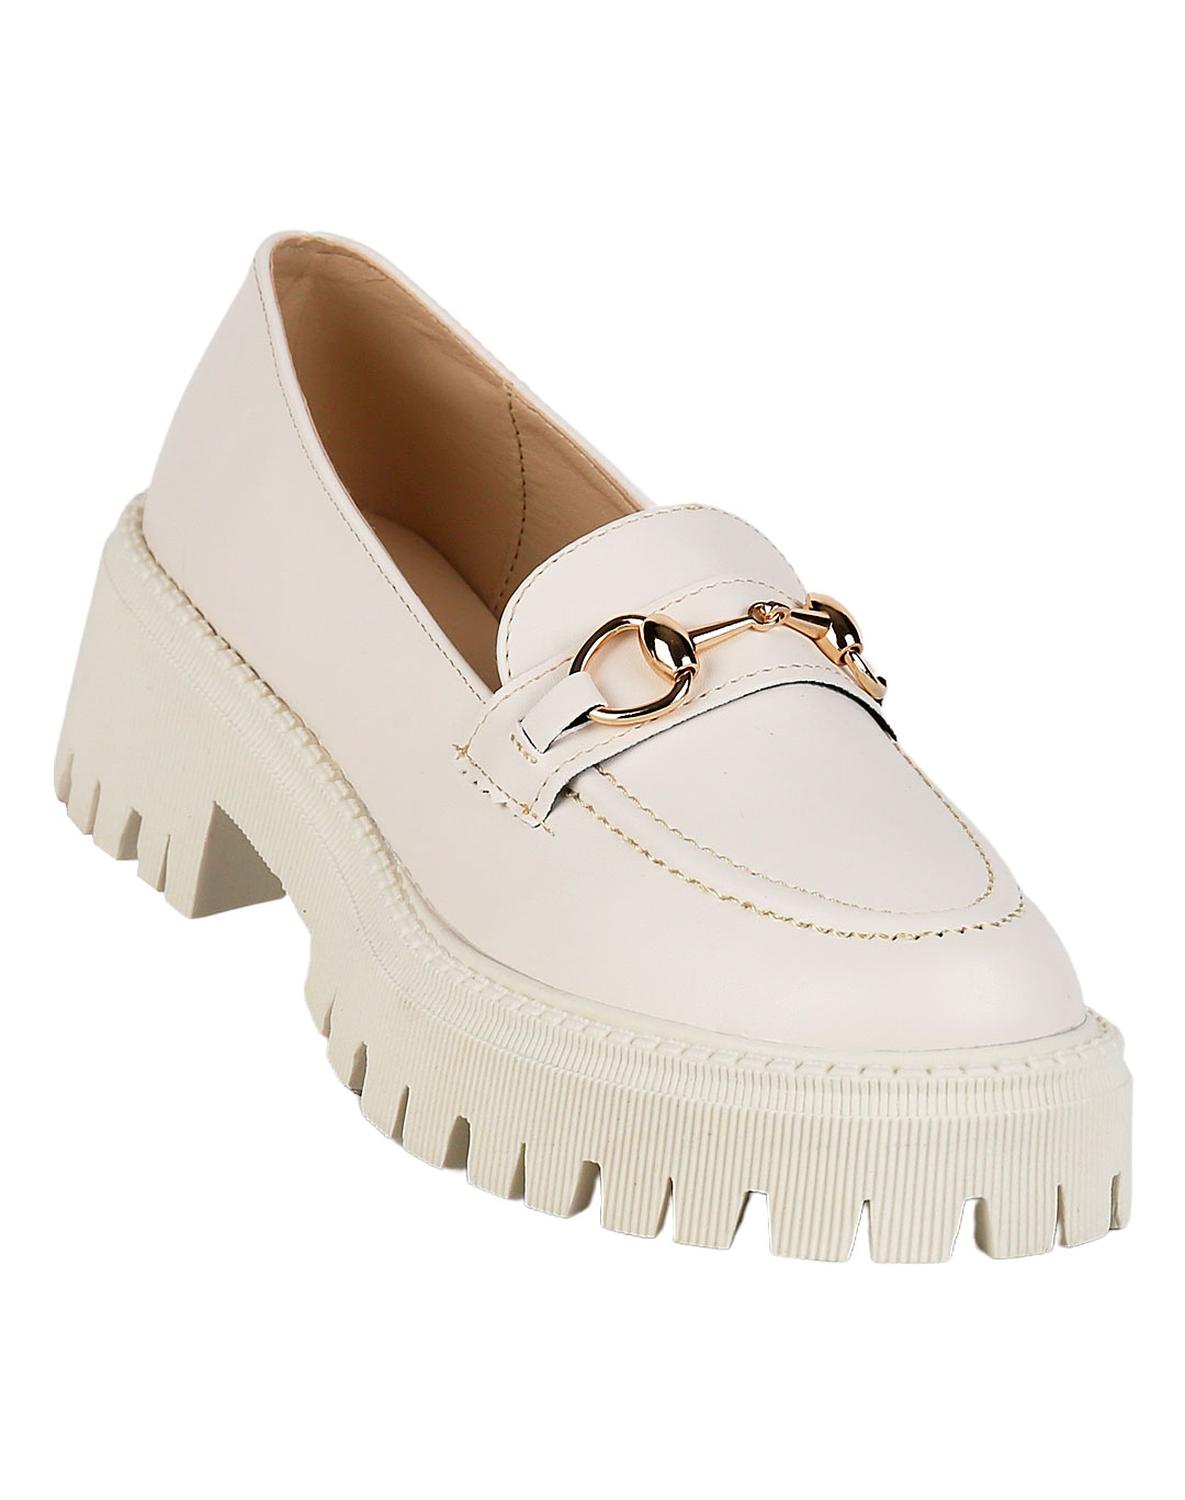 Zapatos Minimalistas - Mujer - Piel Natural - Malva - The New Derby – Origo  Shoes